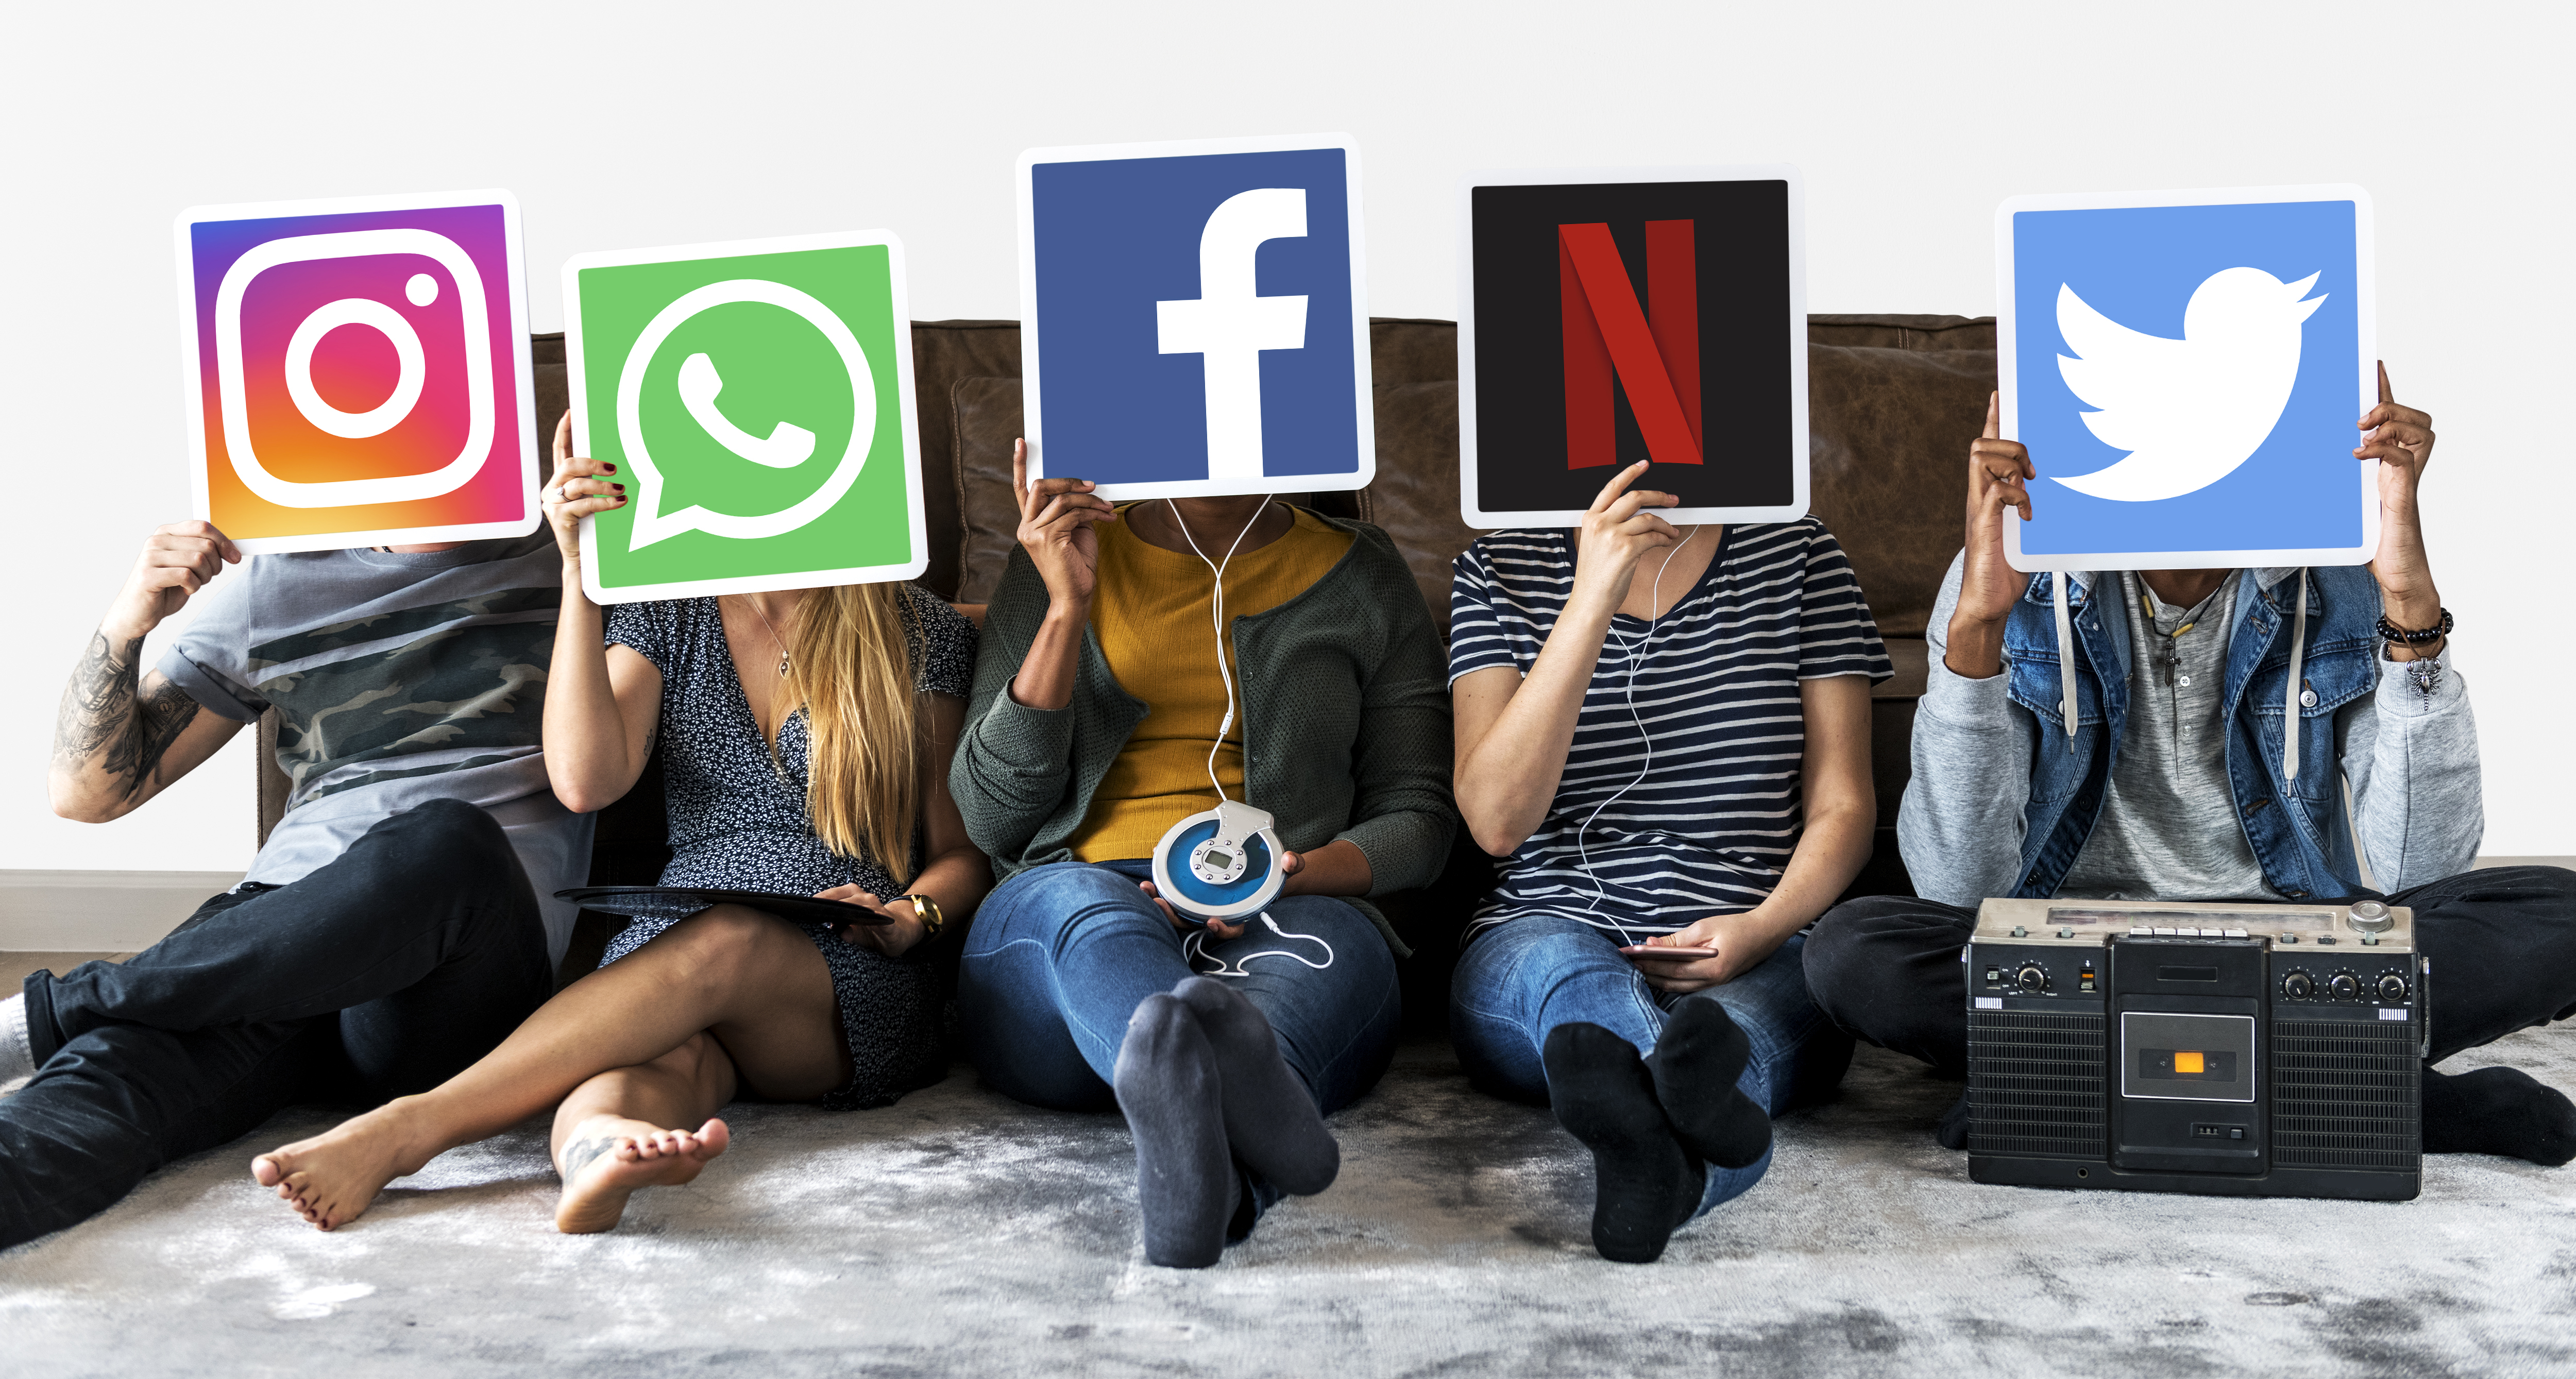 Smulkios įmonės socialiniuose tinkluose: kaip komunikuoti? 7 patarimai